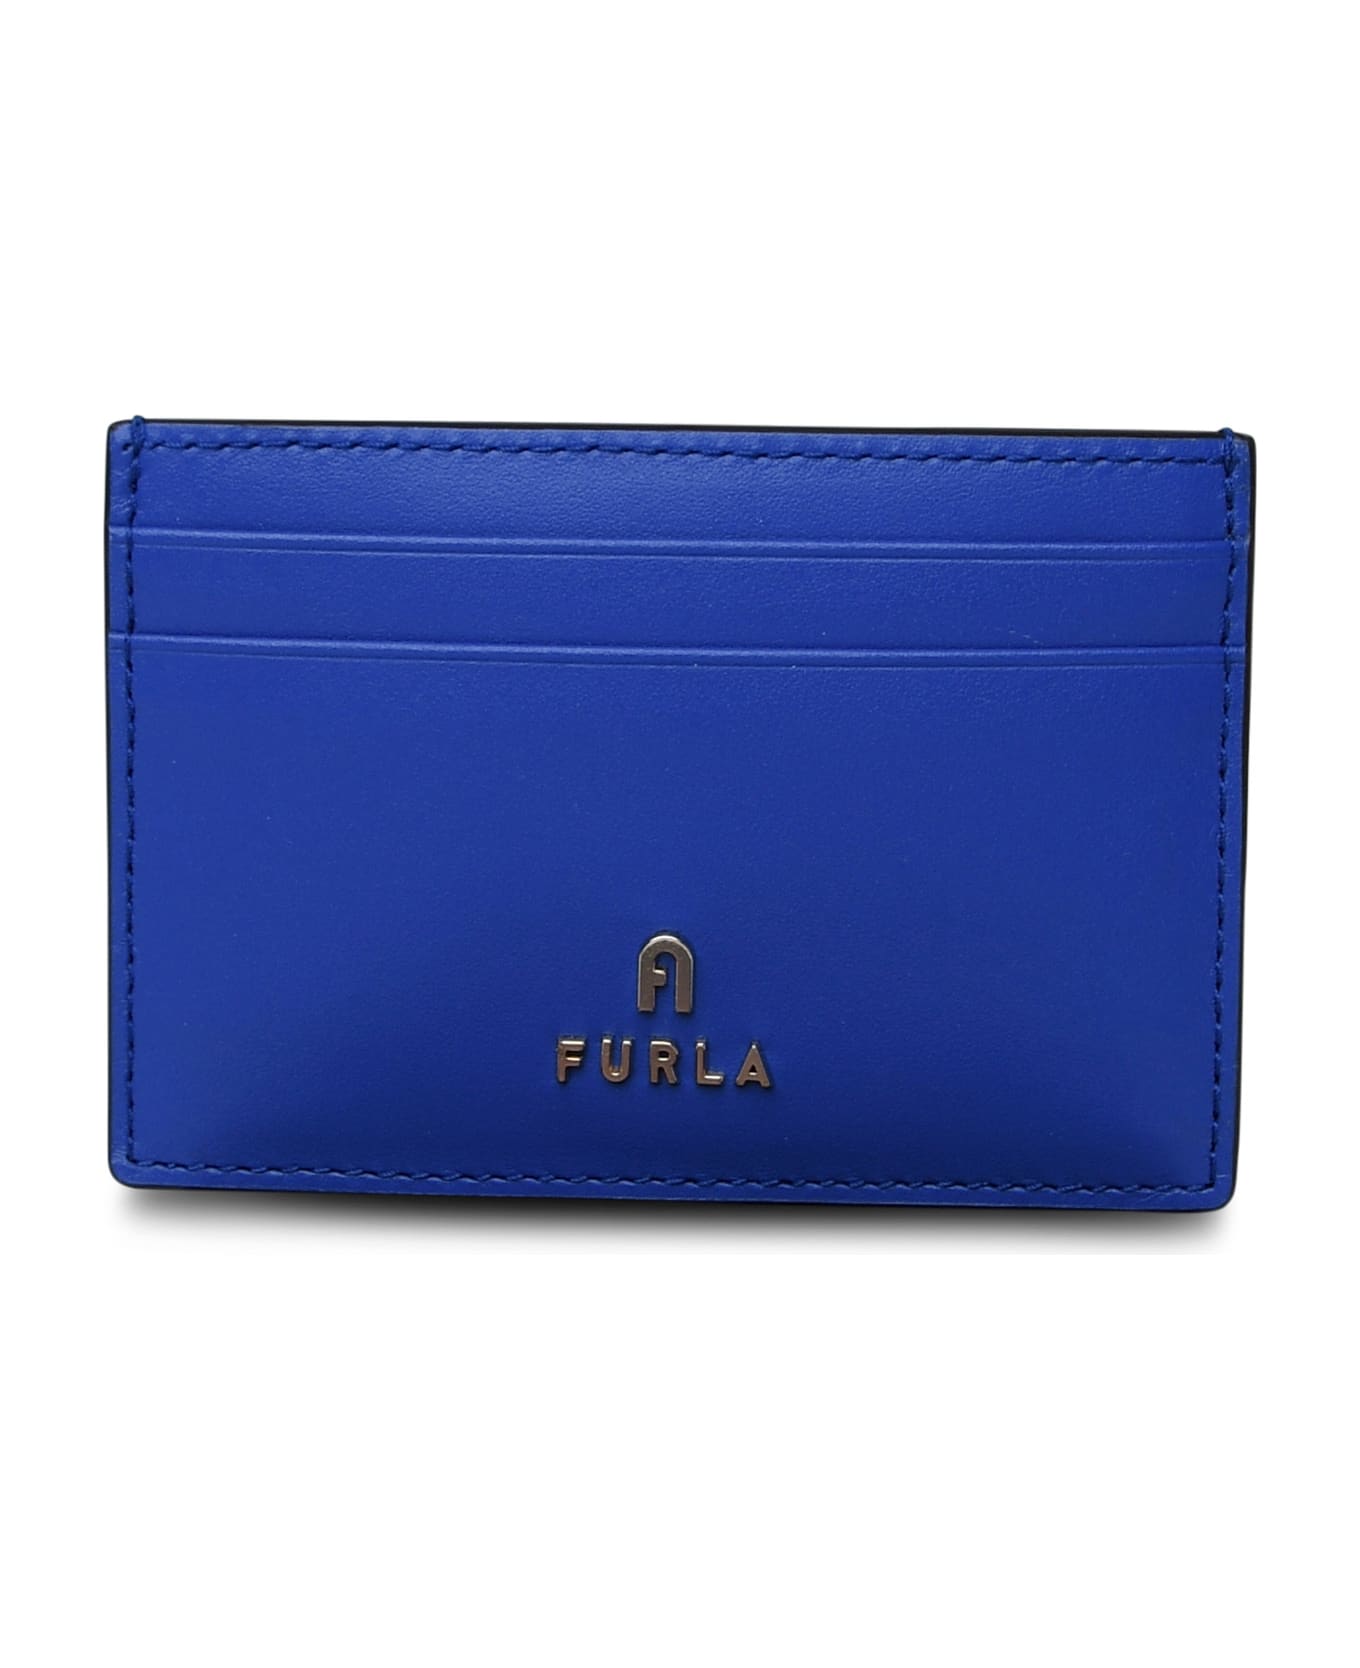 Furla Blue Leather Cardholder - Blue